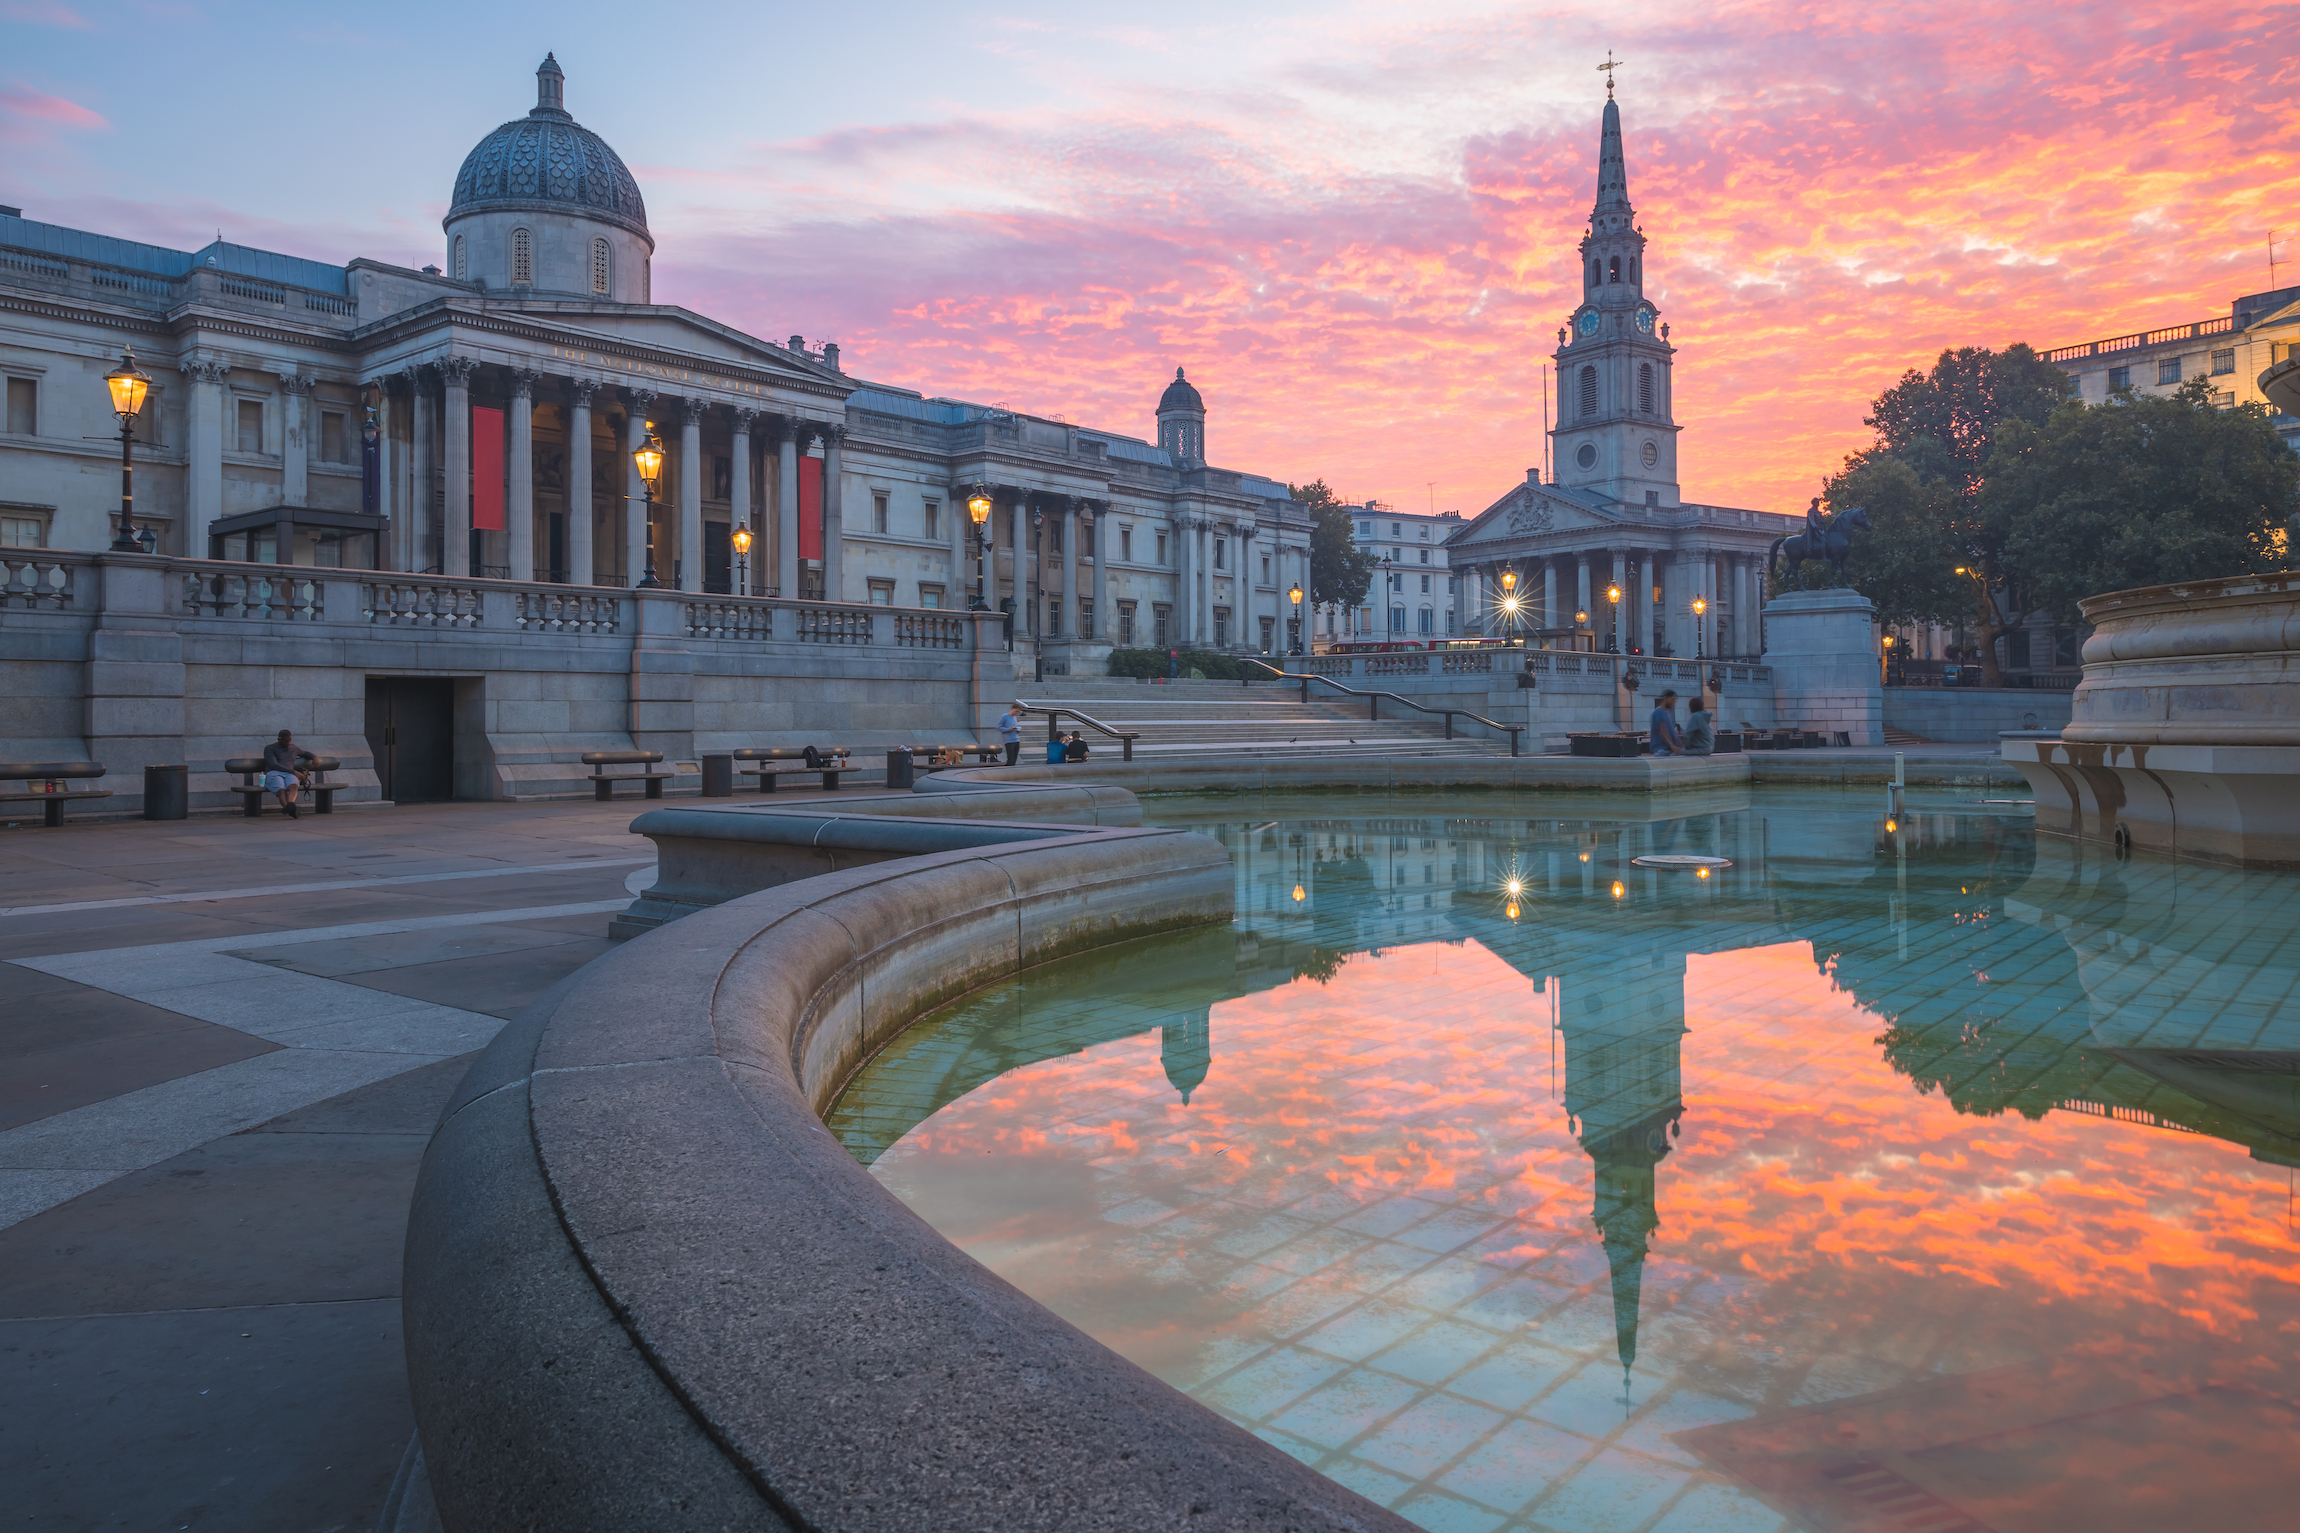 Żywe, kolorowe, dramatyczne niebo o wschodzie lub zachodzie słońca na Trafalgar Square i National Gallery w centrum Londynu, Wielka Brytania.